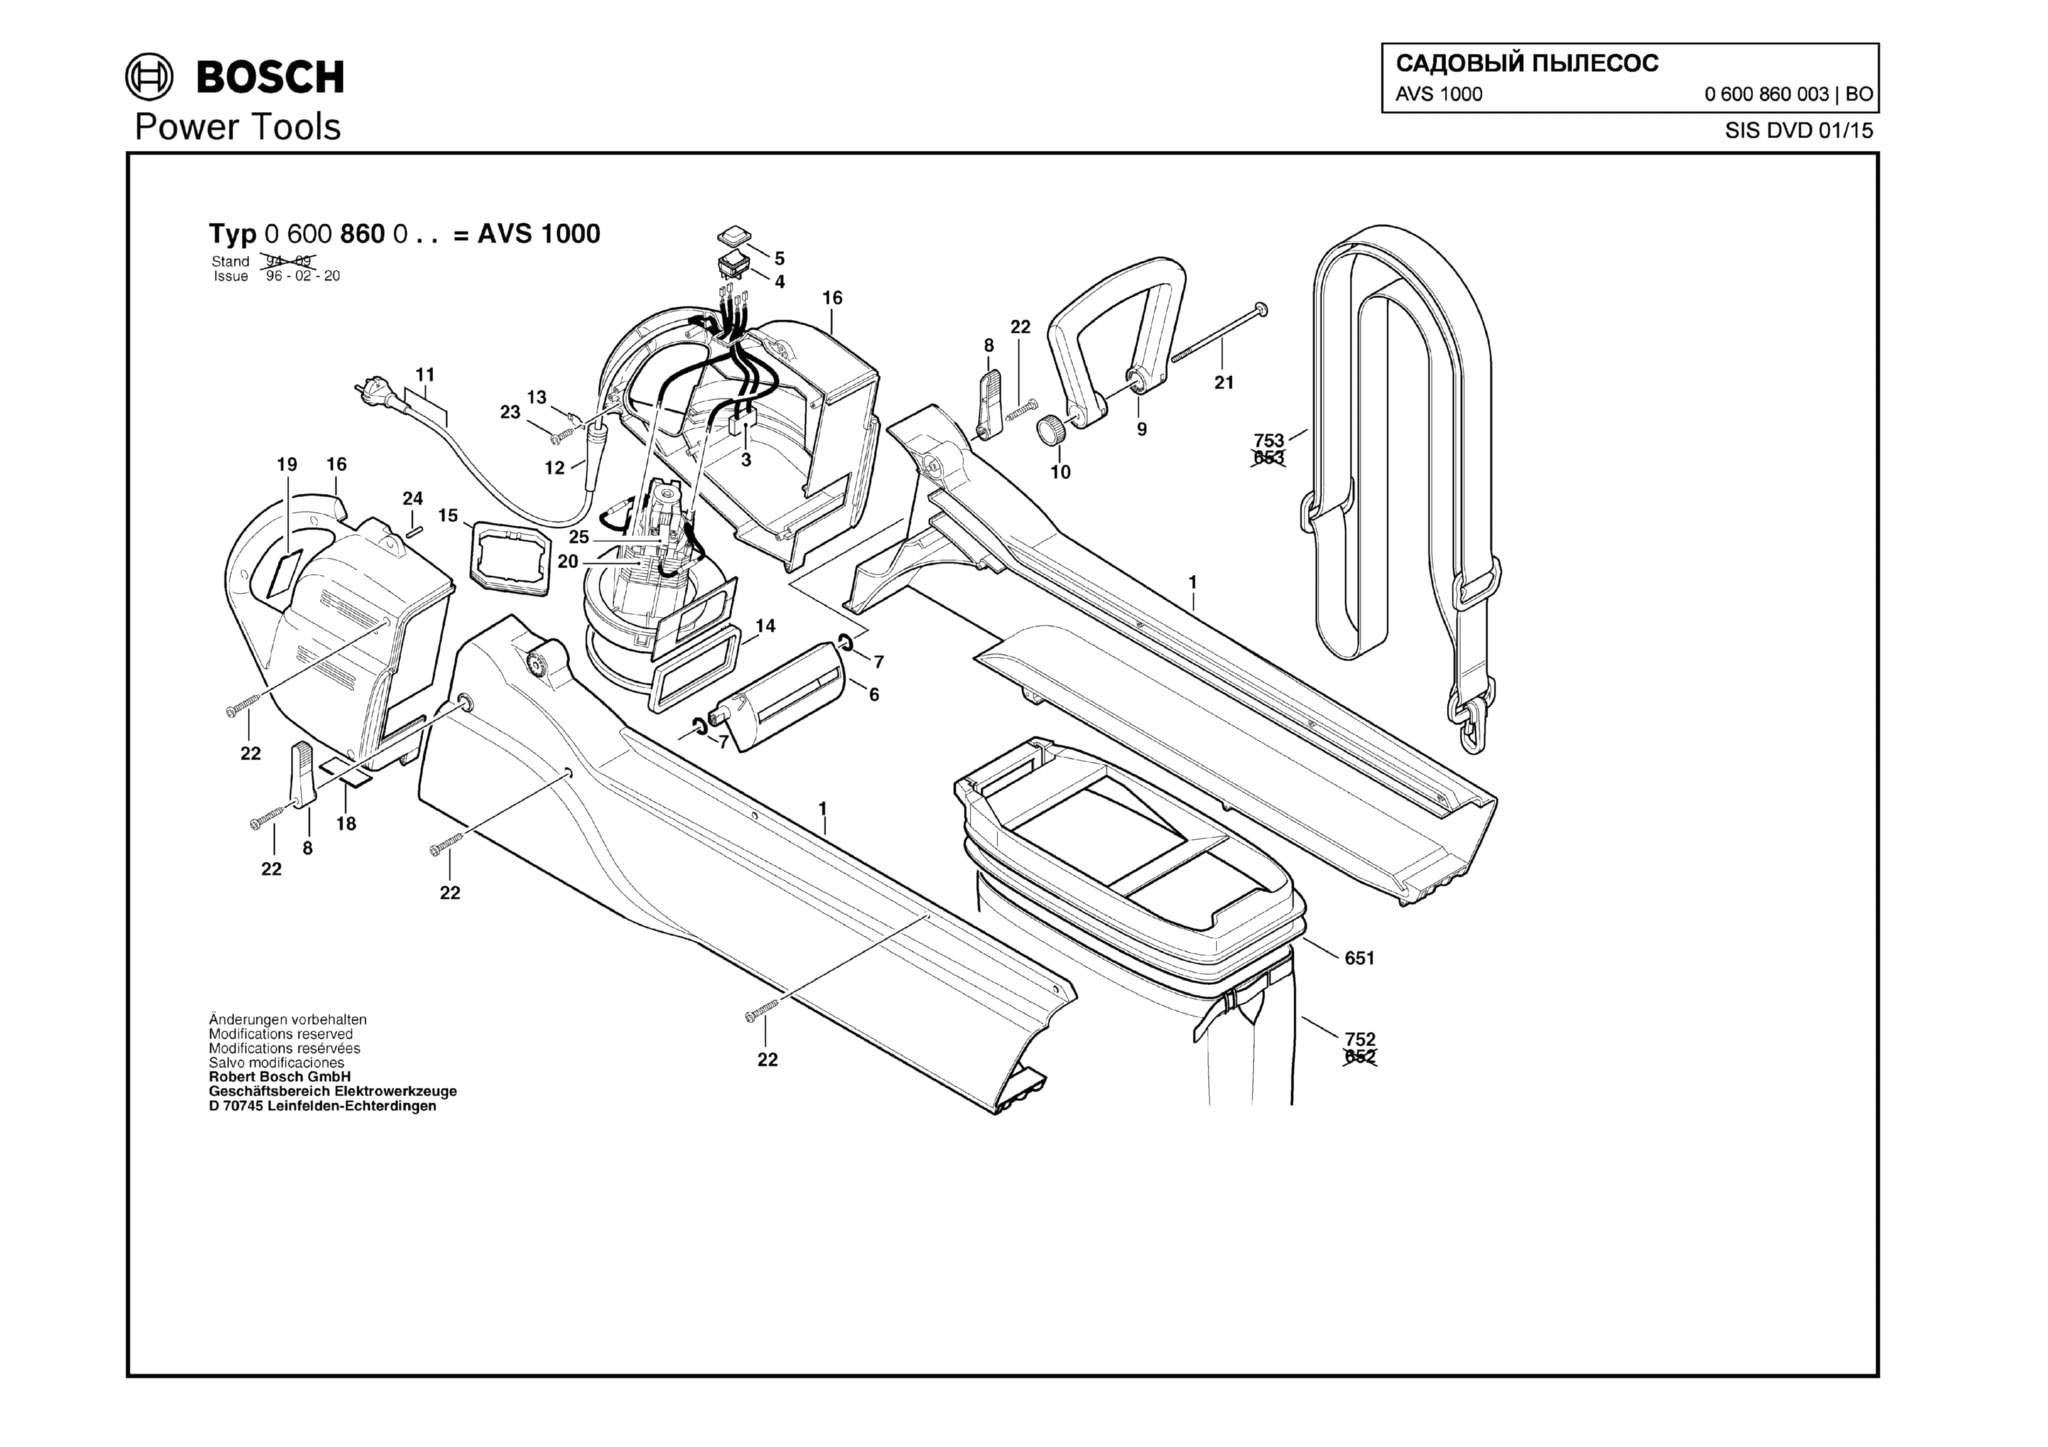 Запчасти, схема и деталировка Bosch AVS 1000 (ТИП 0600860003)